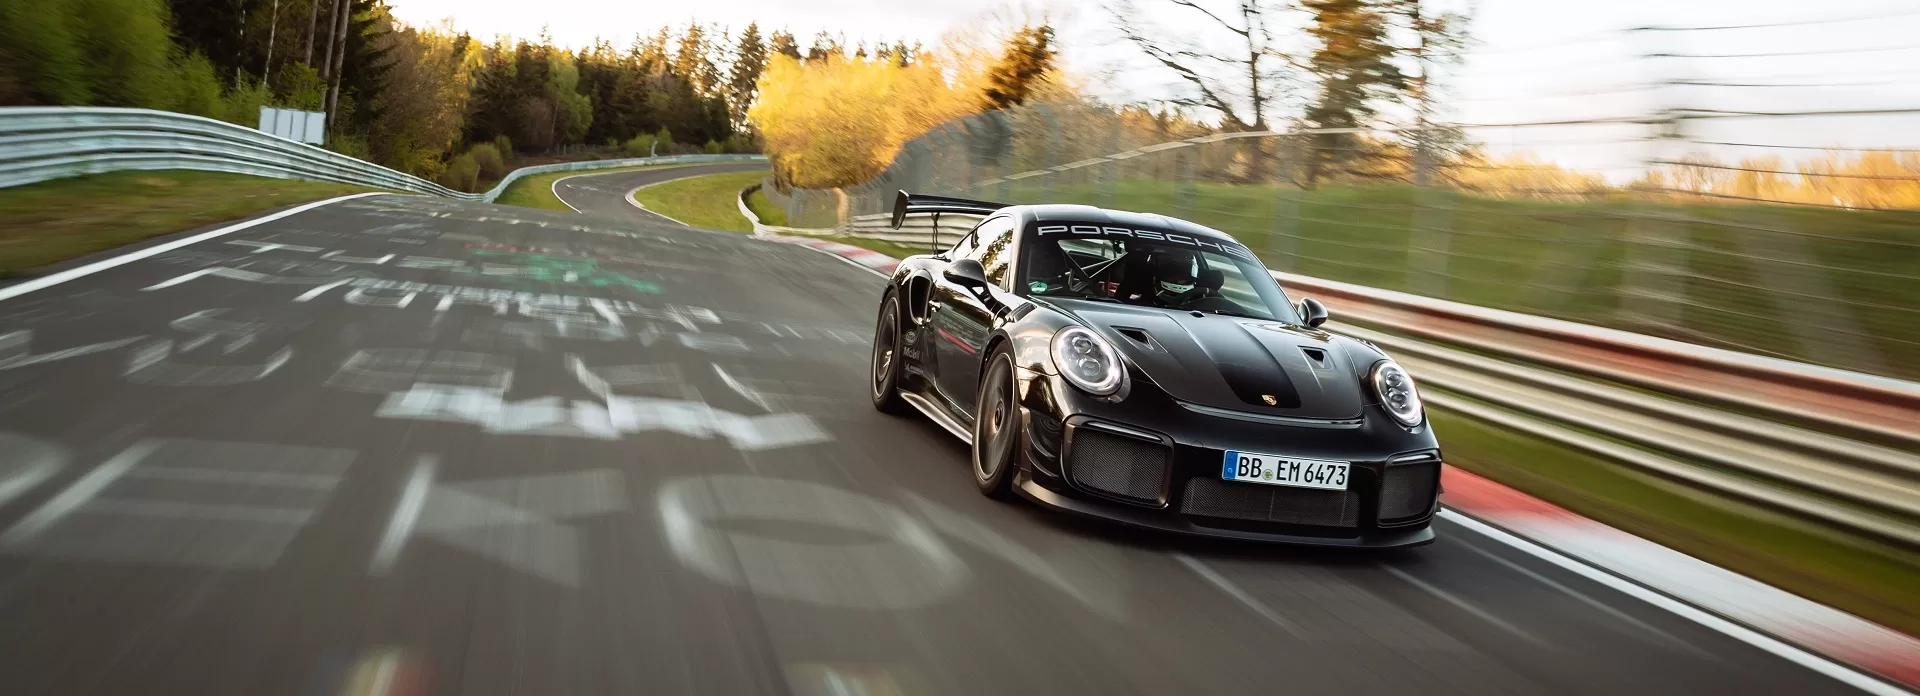 Porsche ставит новый рекорд круга 6:43,300 минуты